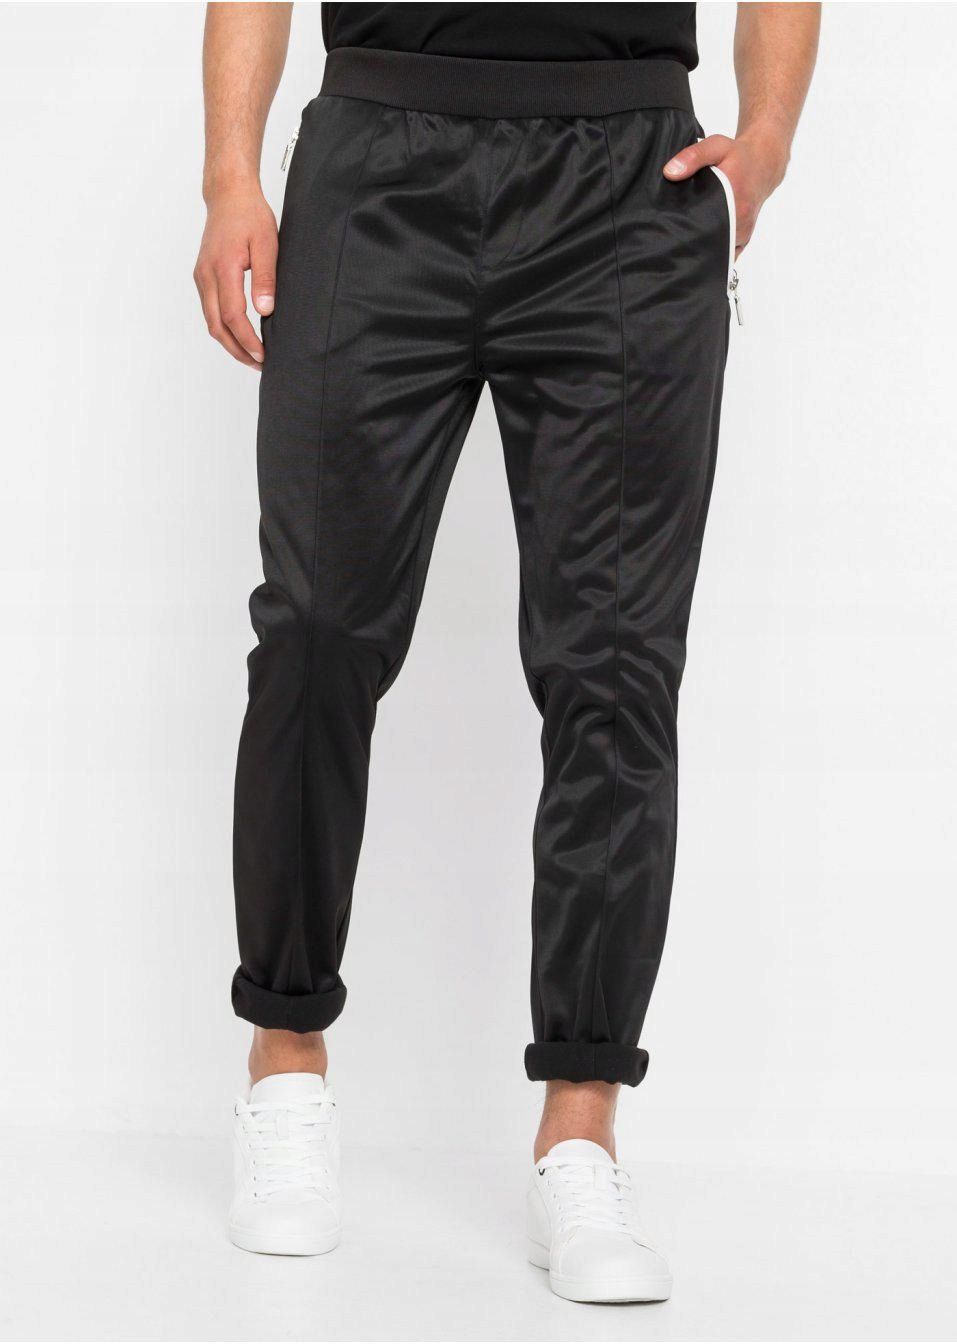 bonprix czarne długie błyszczące sportowe spodnie męskie zamki 60-62